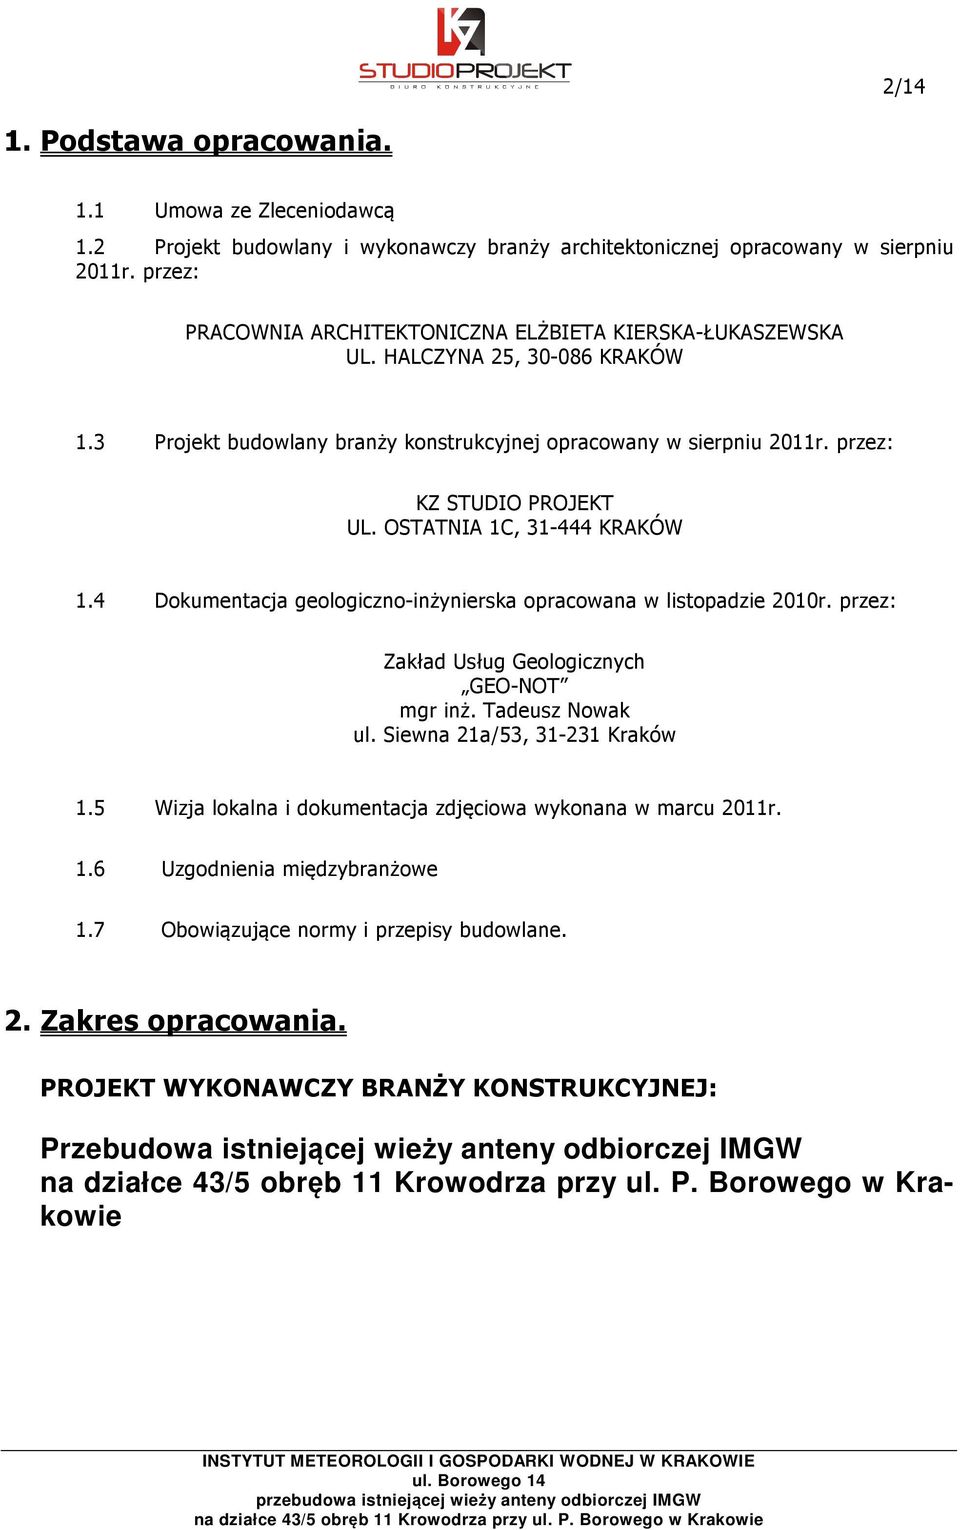 OSTATNIA 1C, 31-444 KRAKÓW 1.4 Dokumentacja geologiczno-inżynierska opracowana w listopadzie 2010r. przez: Zakład Usług Geologicznych GEO-NOT mgr inż. Tadeusz Nowak ul. Siewna 21a/53, 31-231 Kraków 1.